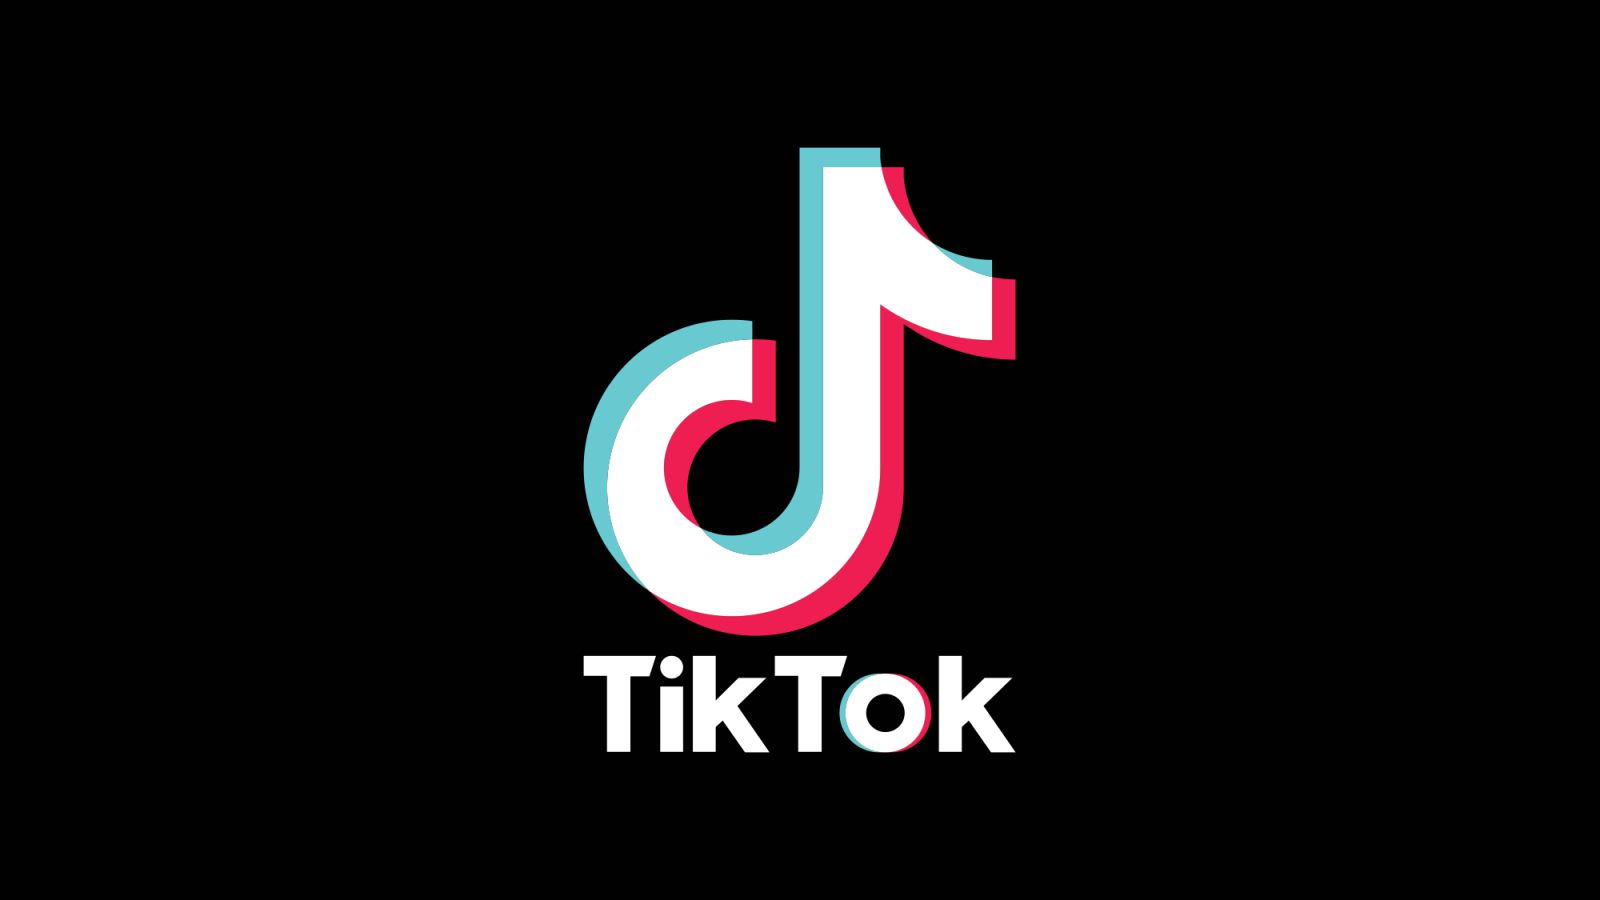 Tiktok enregistre 672 millions de téléchargements !